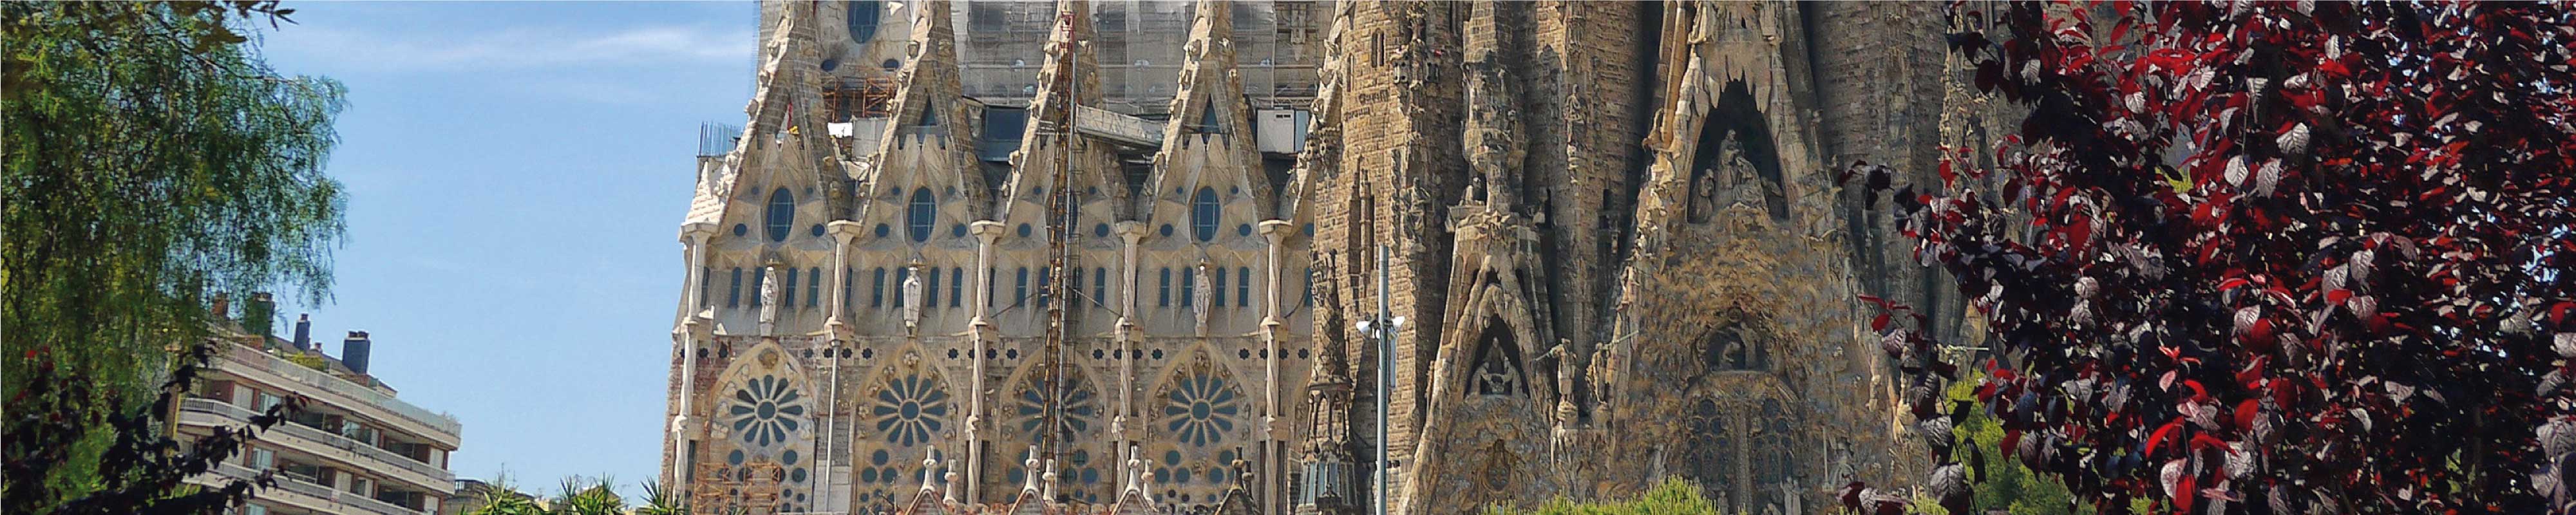 Deposito Bagagli | Sagrada Família a Barcellona - Nannybag